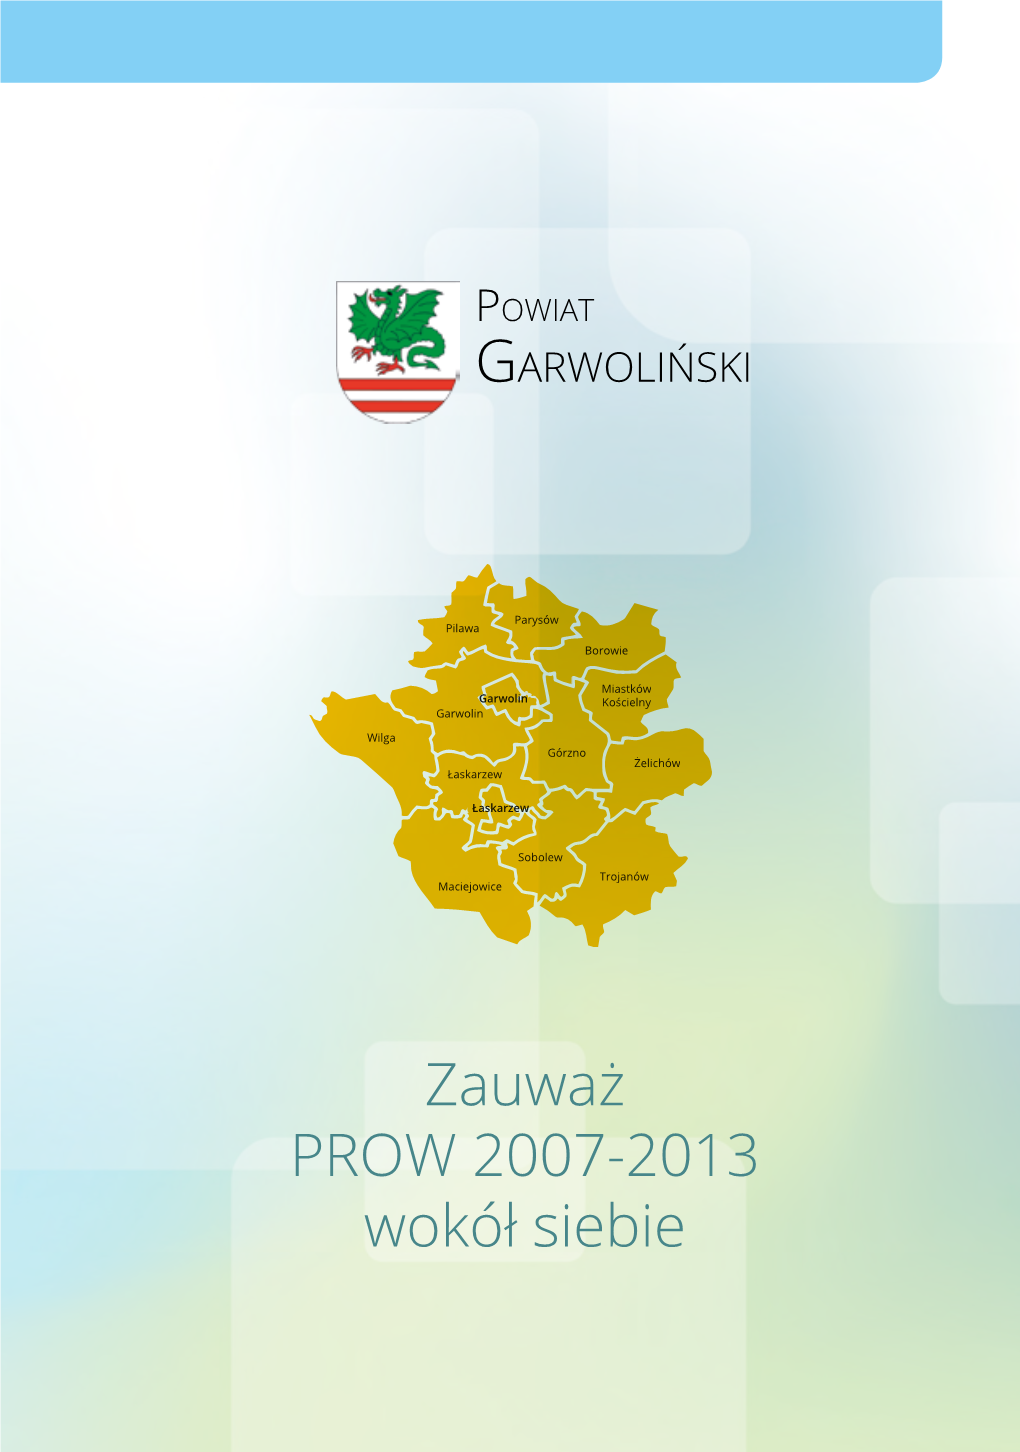 Zauważ PROW 2007-2013 Wokół Siebie Powiat GARWOLIŃSKI Szanowni Państwo